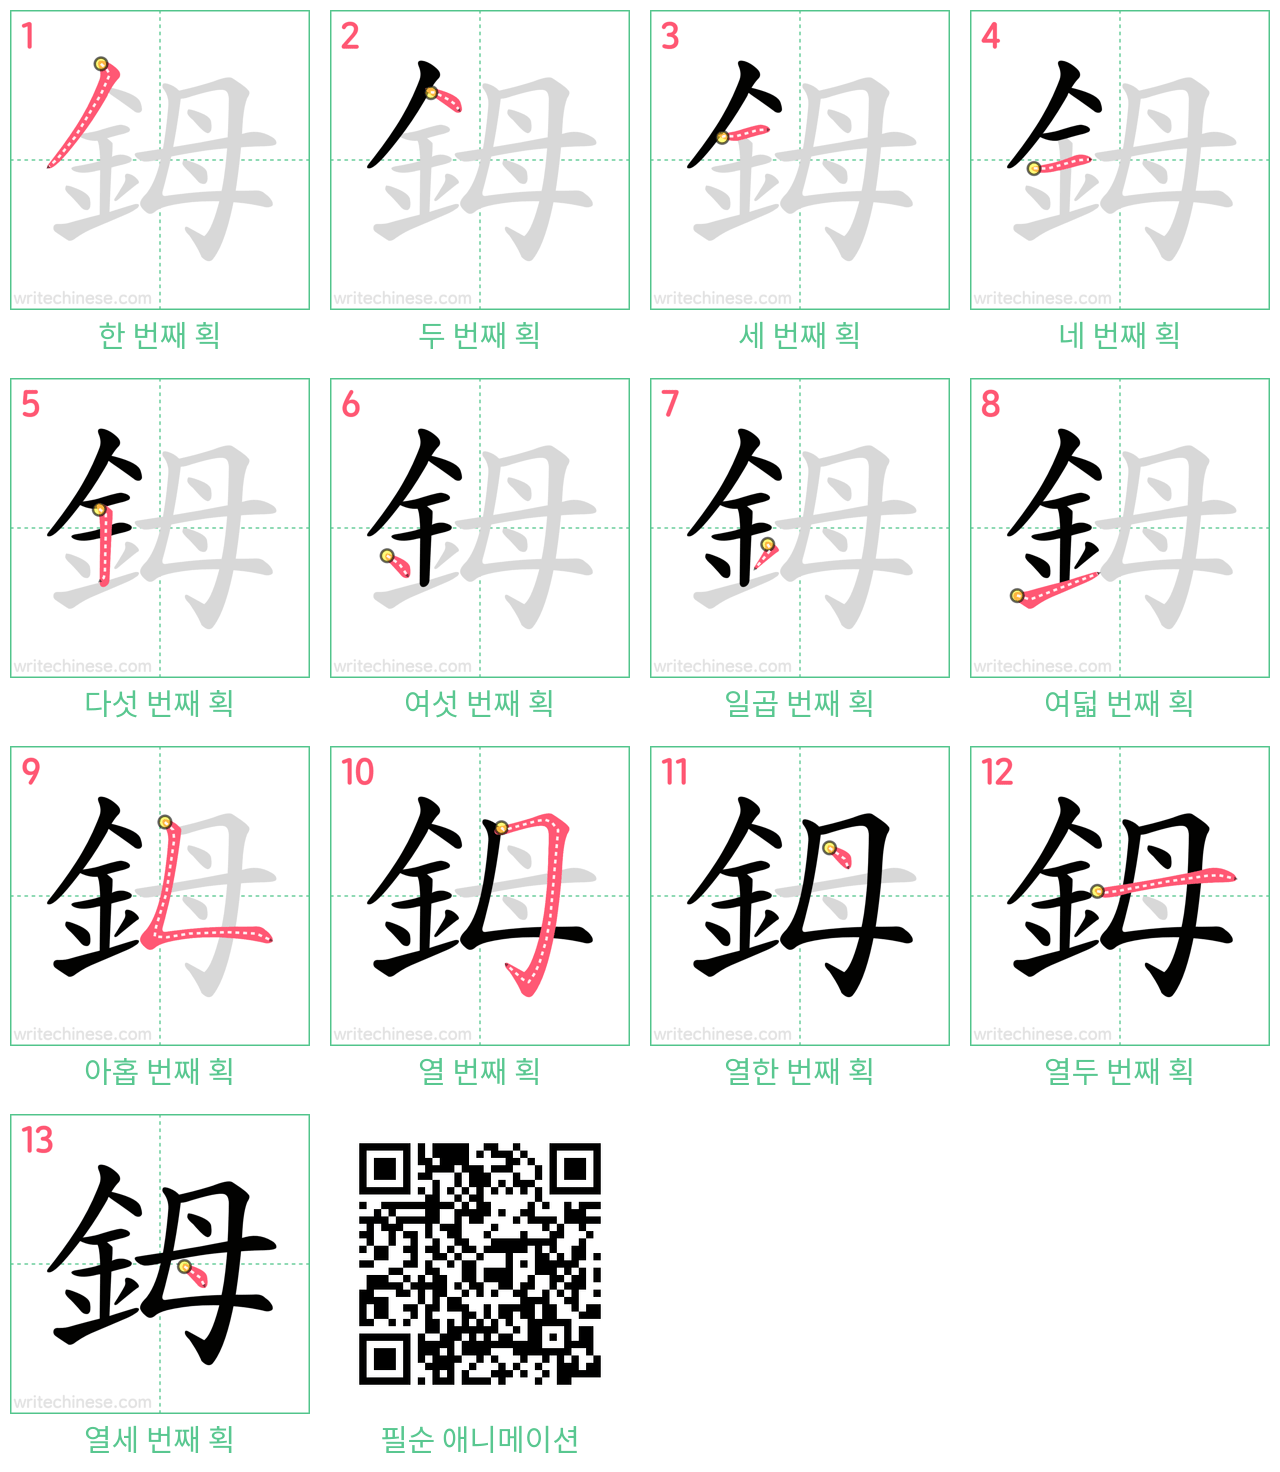 鉧 step-by-step stroke order diagrams